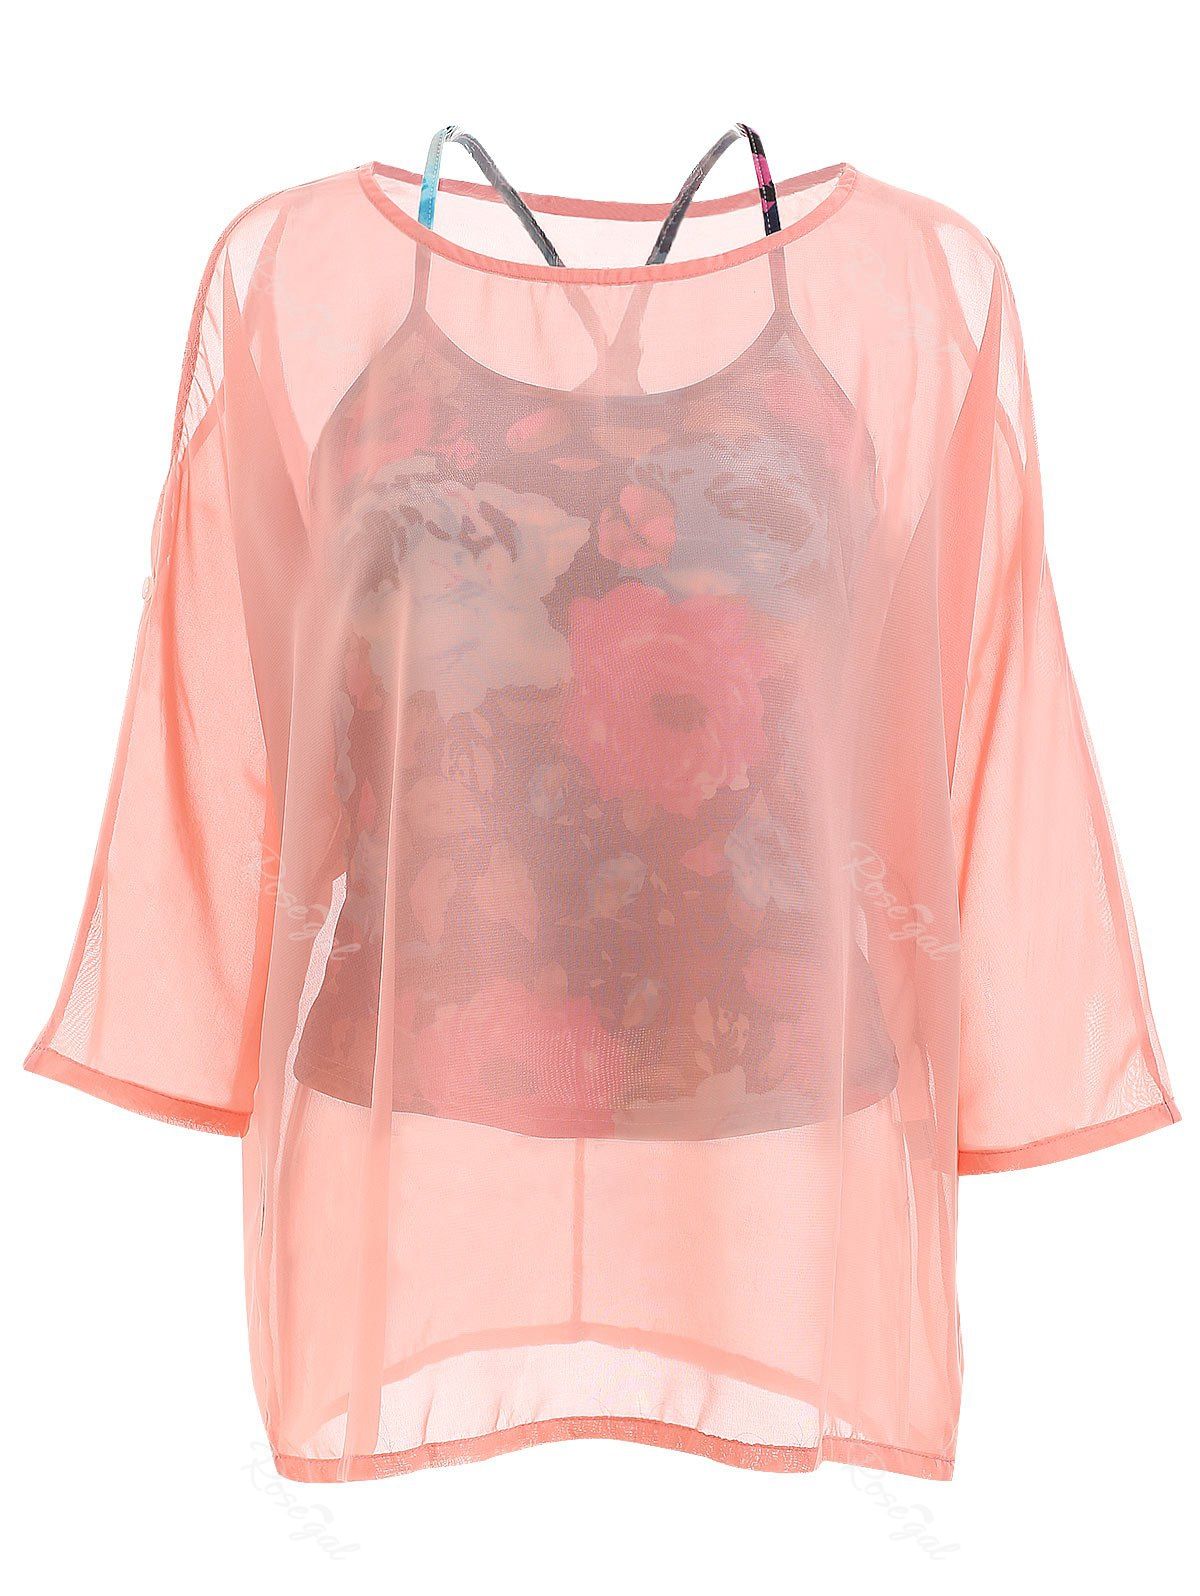 Corsage Élégant en Mousseline de Soie avec Épaules Dénudées + Veste à Imprimé Floral pour Femmes Rose  Taille Unique